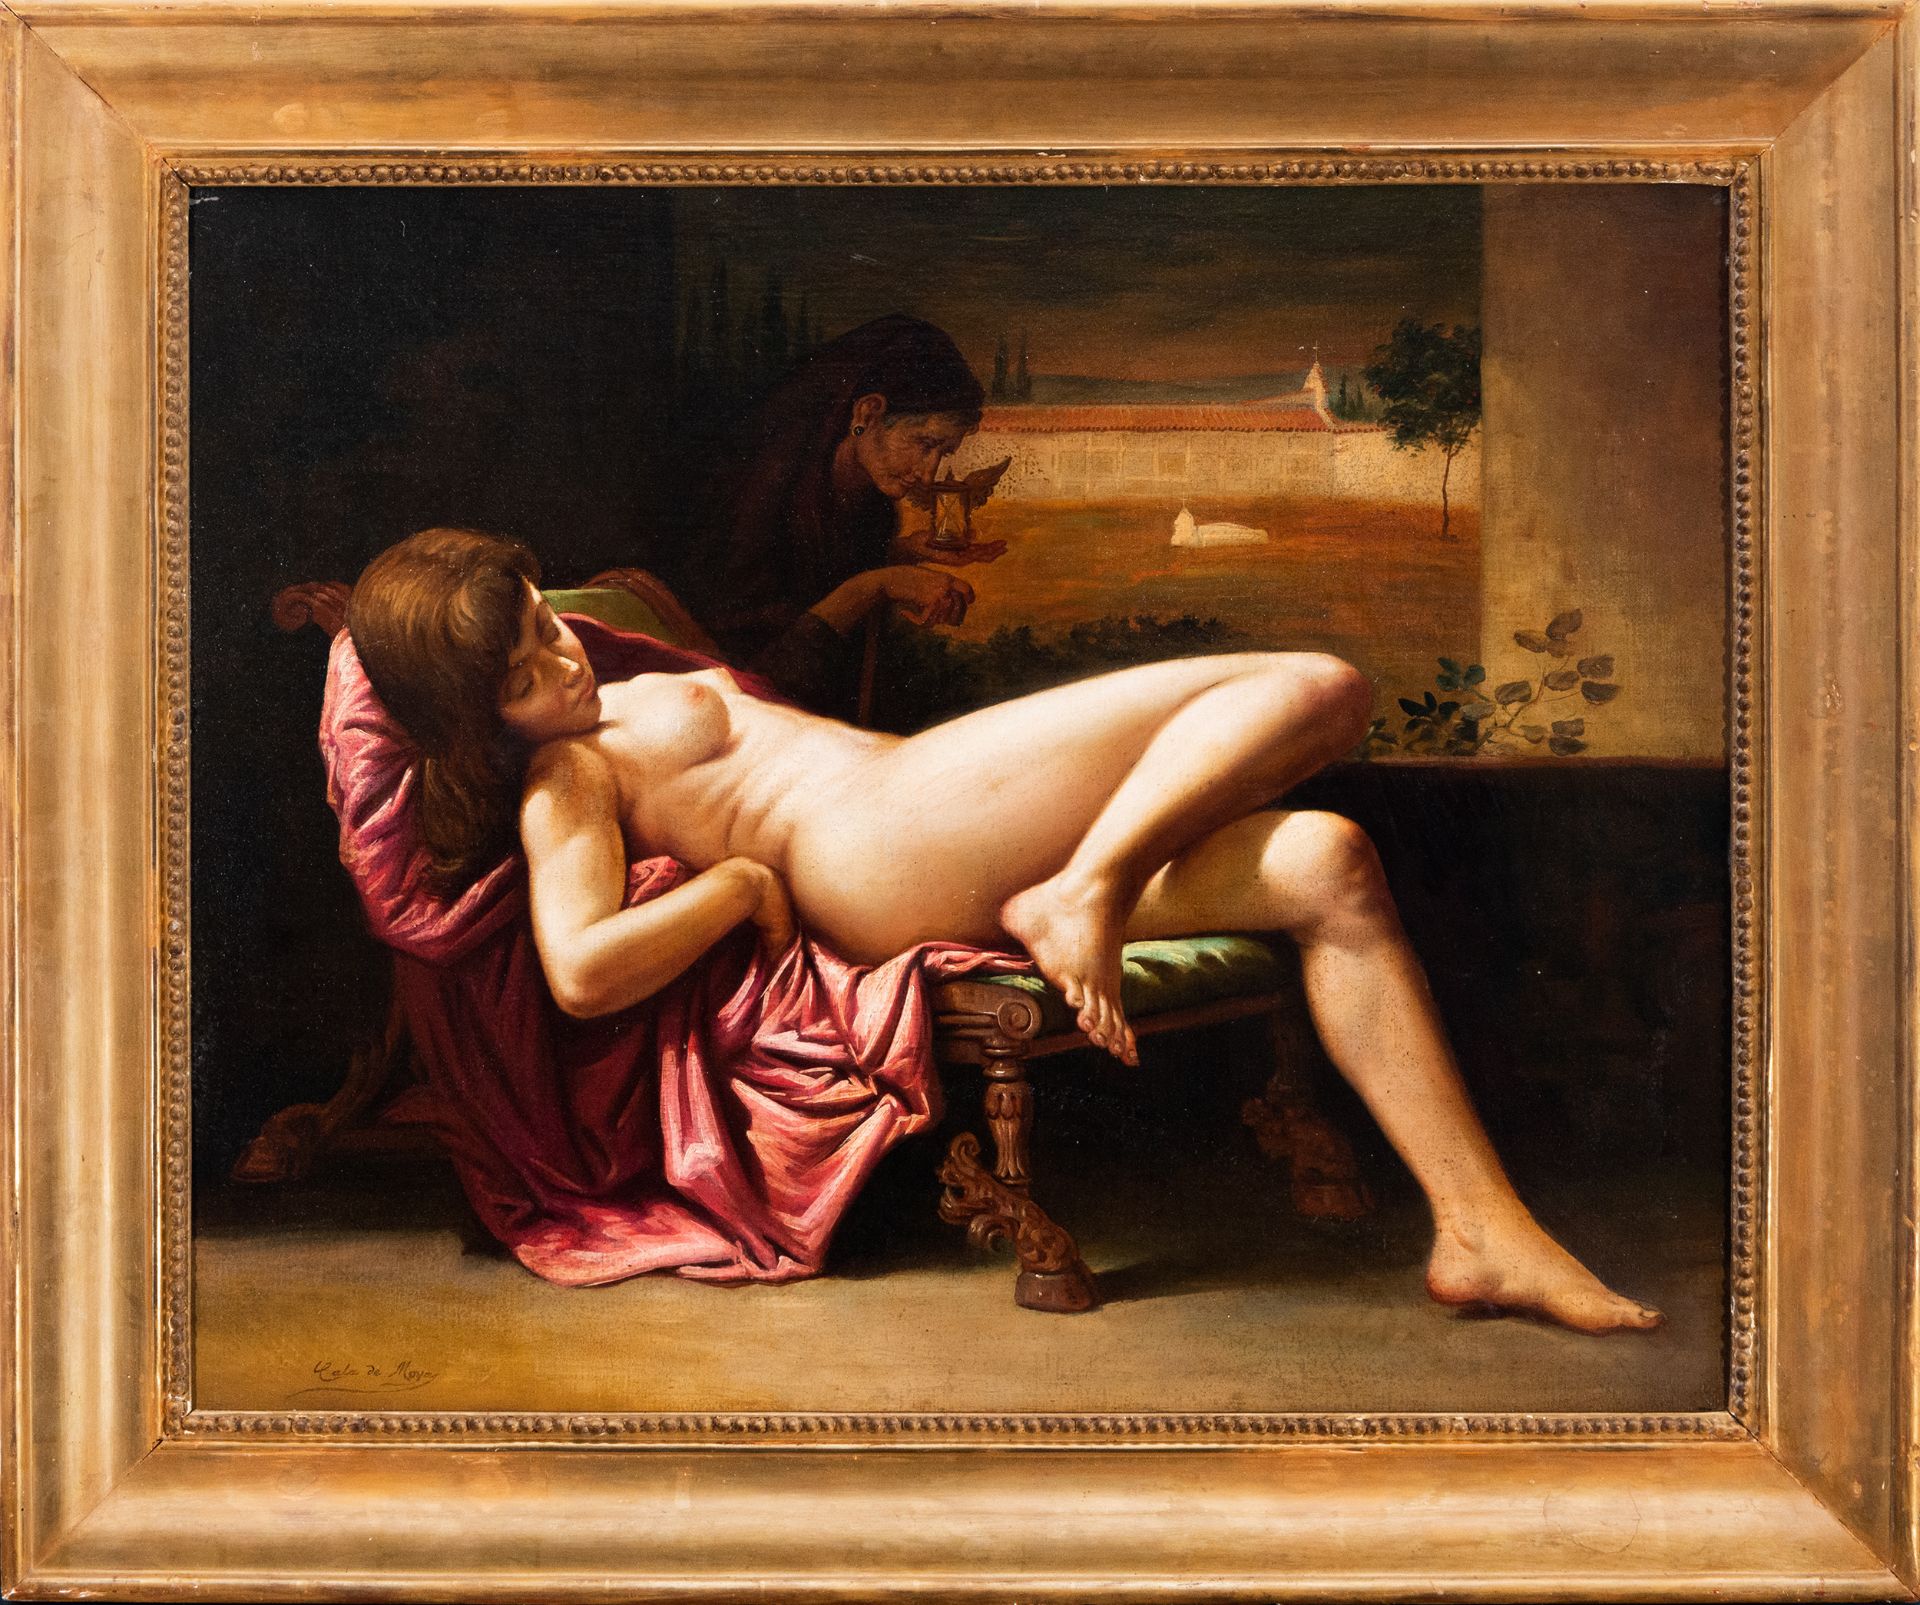 Naked Maja, signed Cala de Moya, 19th century Spanish school